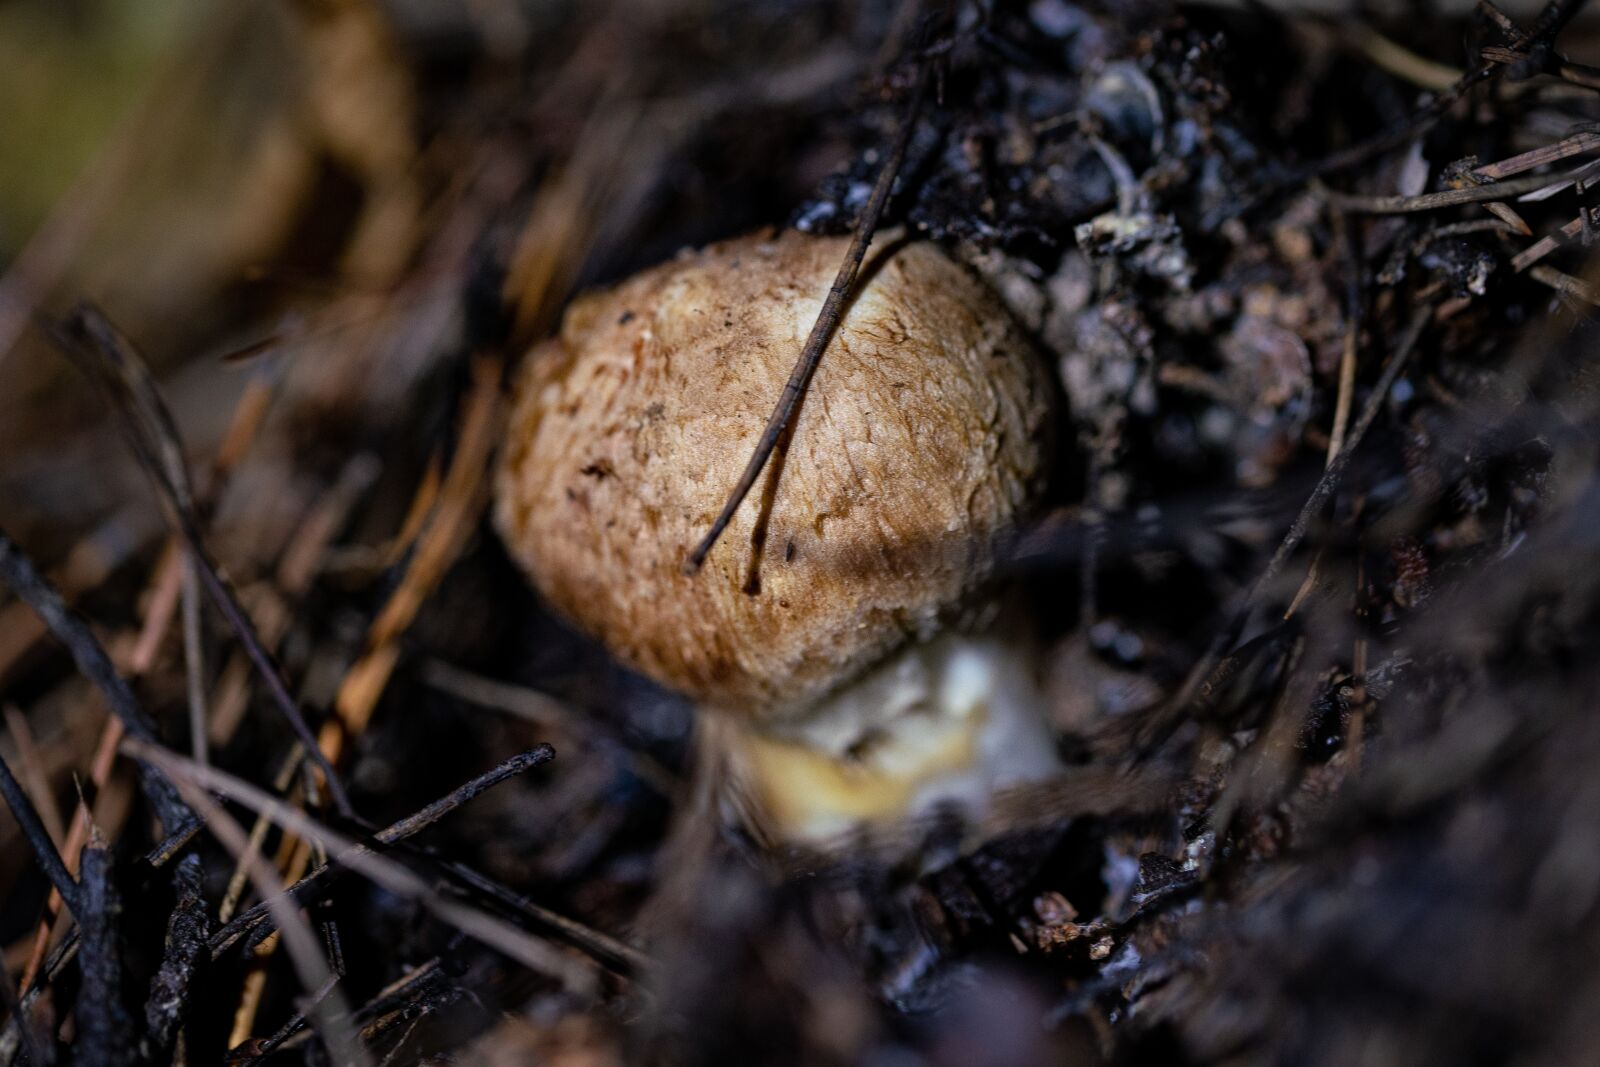 105mm F2.8 sample photo. Mushroom, pine mushroom, food photography